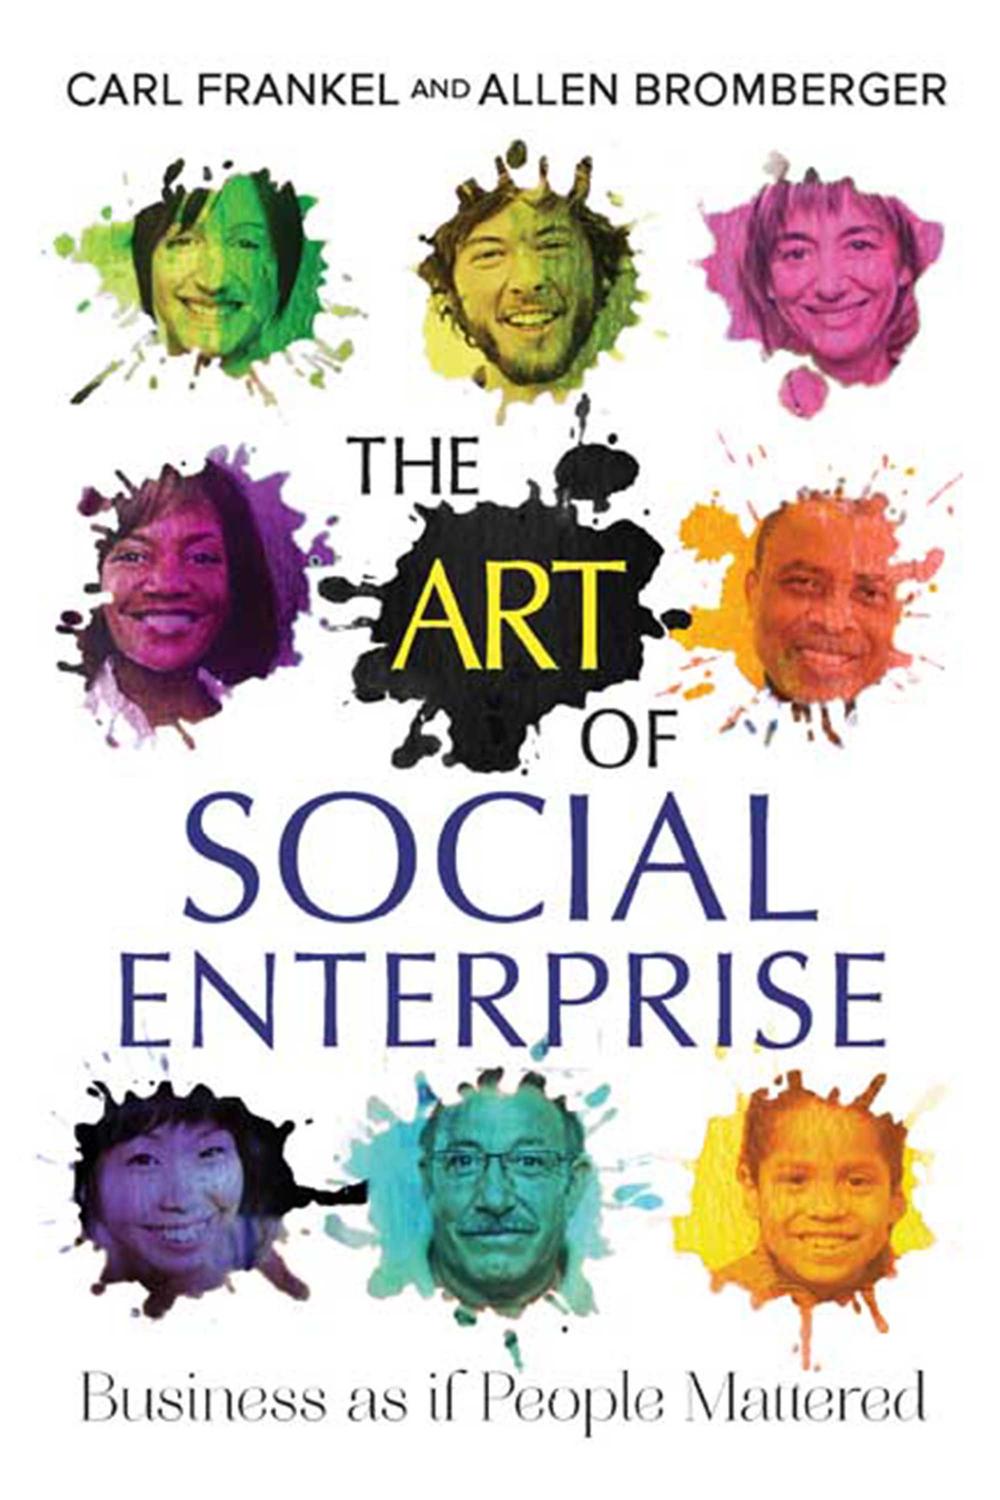 The art of social enterprise pdf free download free